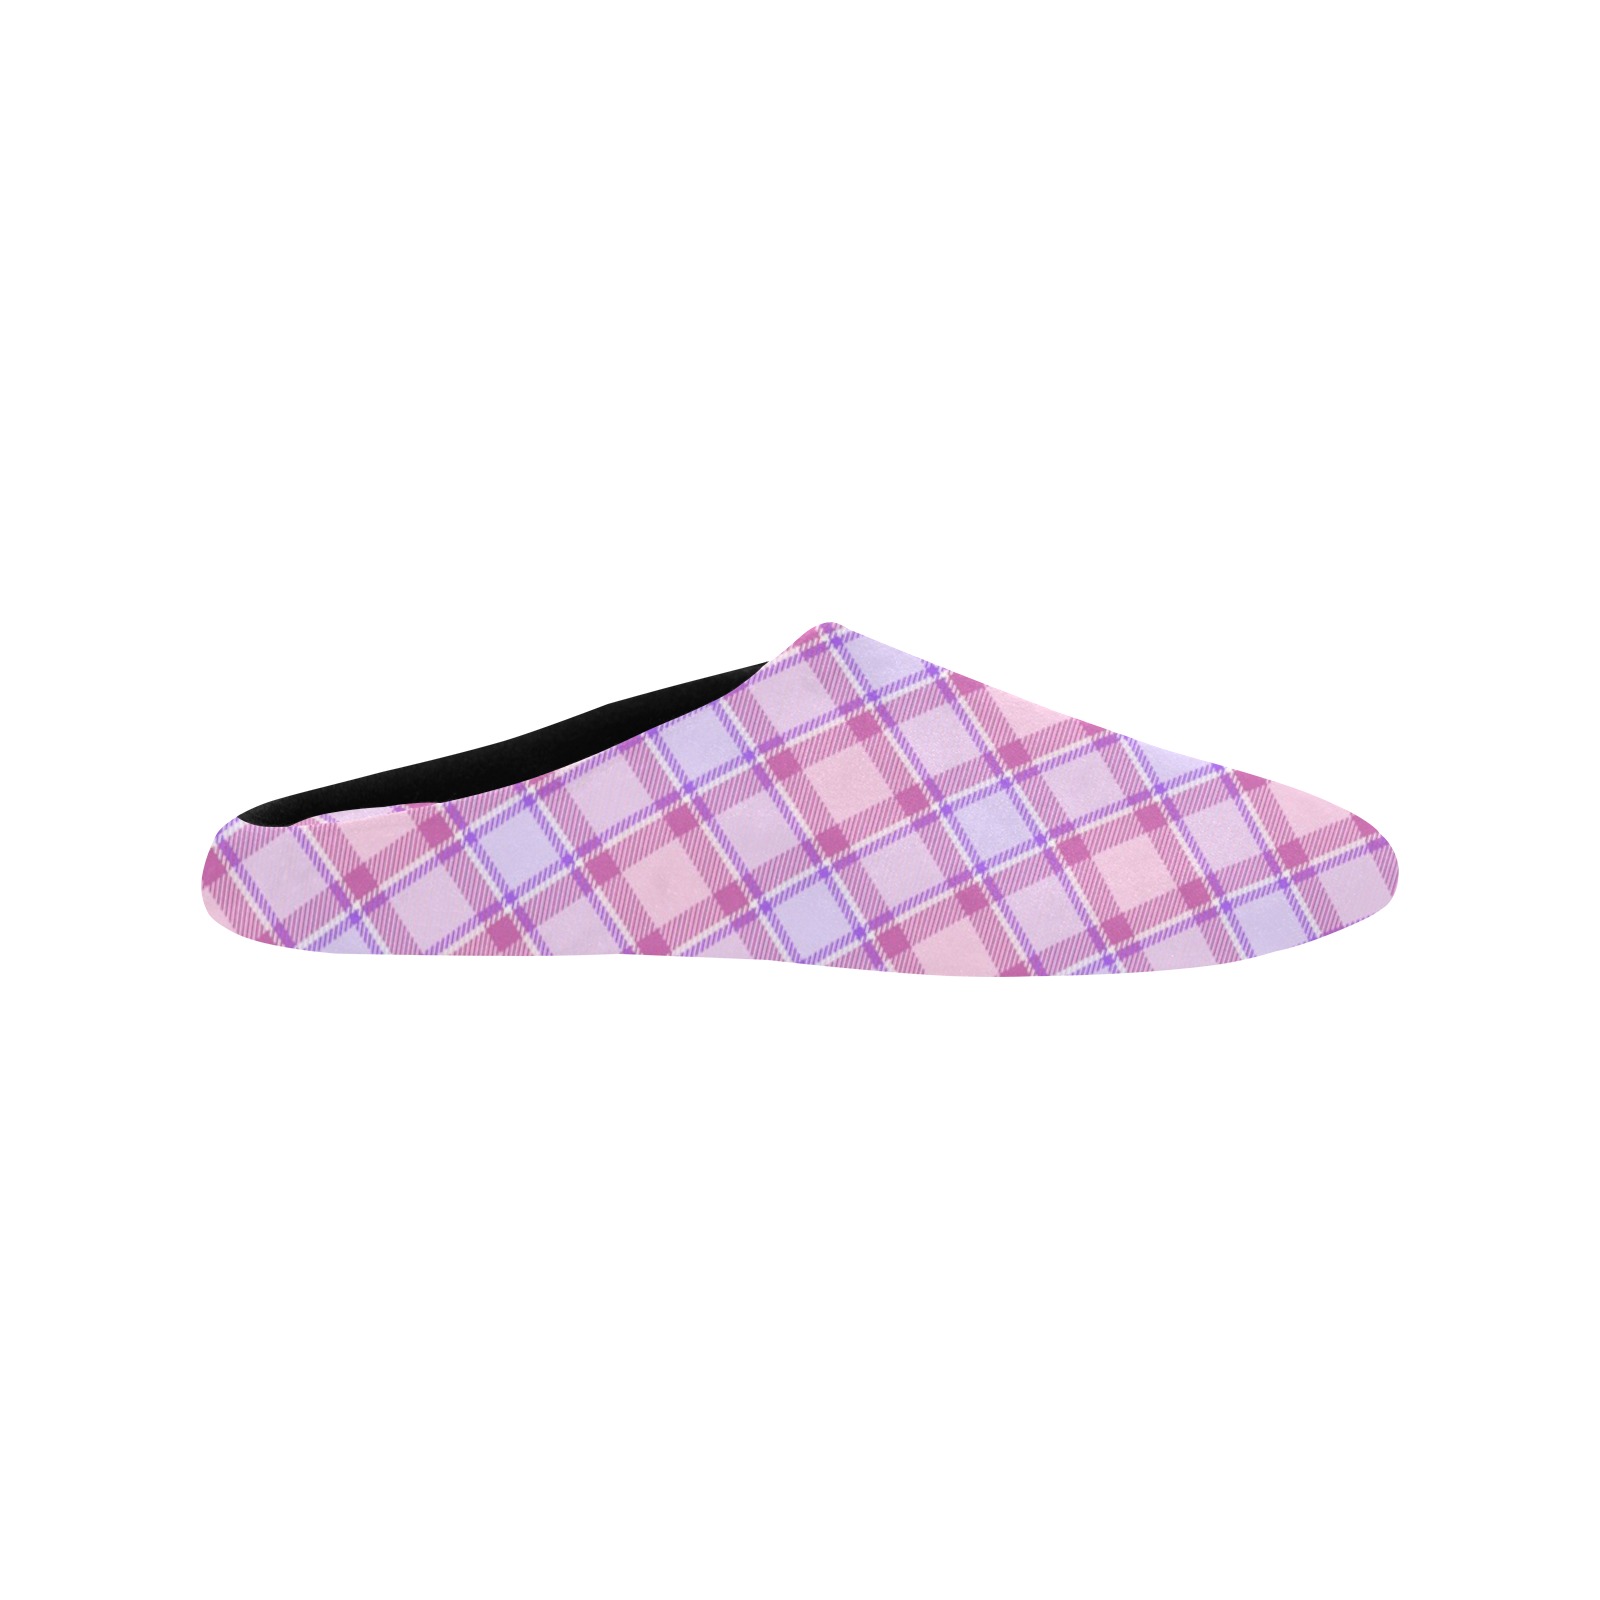 Pastel Baby Girl Plaid Men's Non-Slip Cotton Slippers (Model 0602)